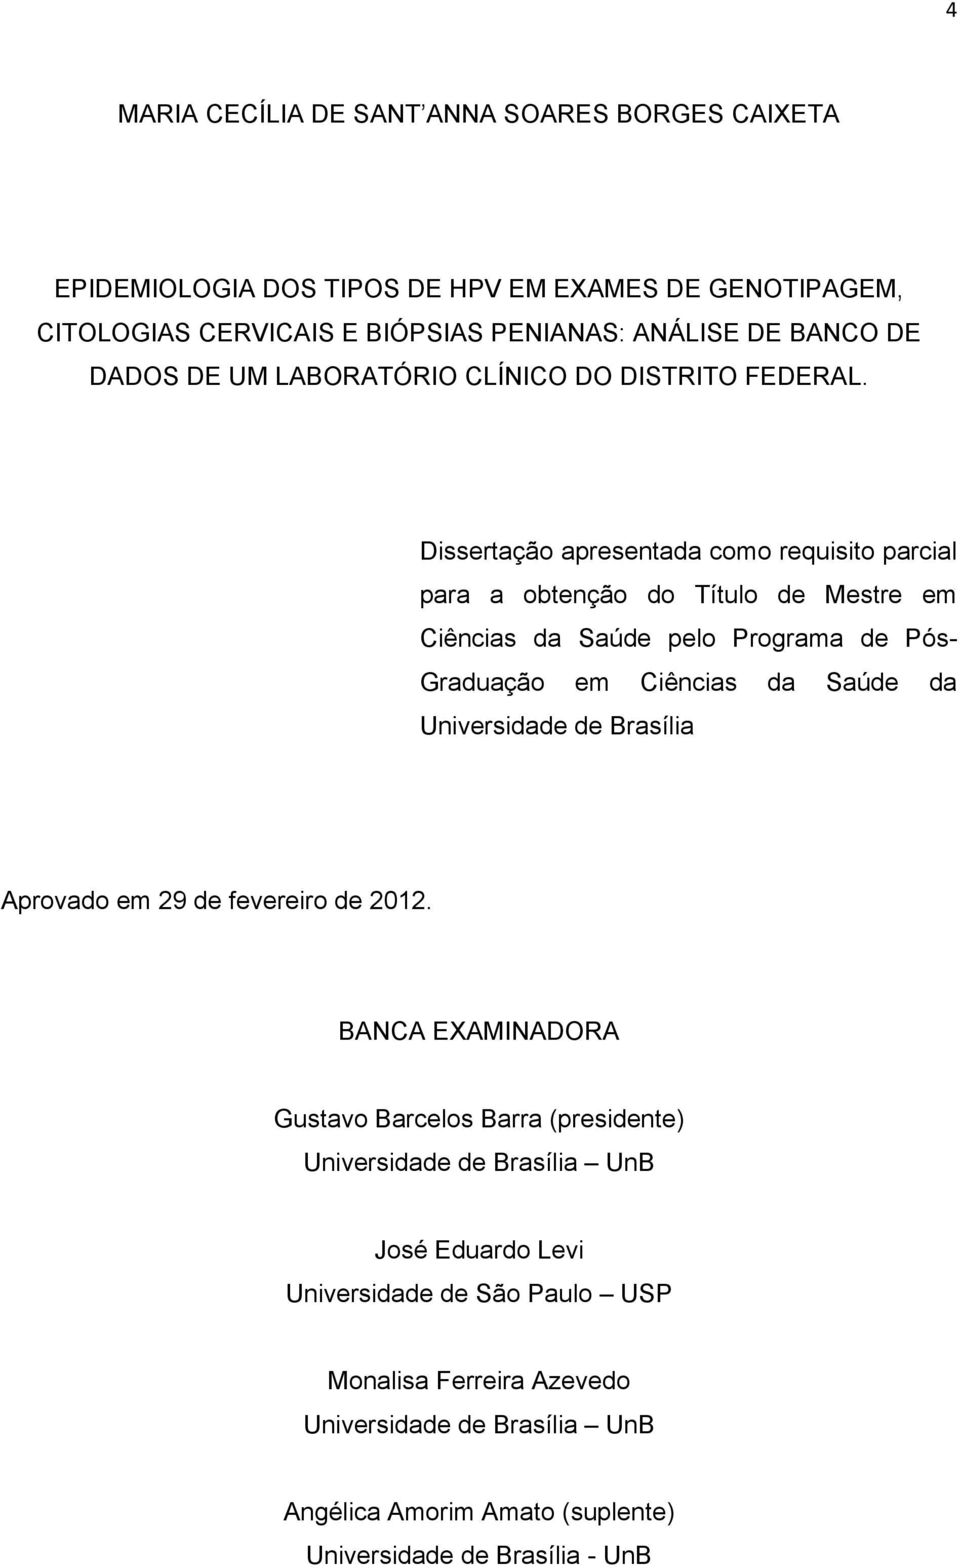 Dissertação apresentada como requisito parcial para a obtenção do Título de Mestre em Ciências da Saúde pelo Programa de Pós- Graduação em Ciências da Saúde da Universidade